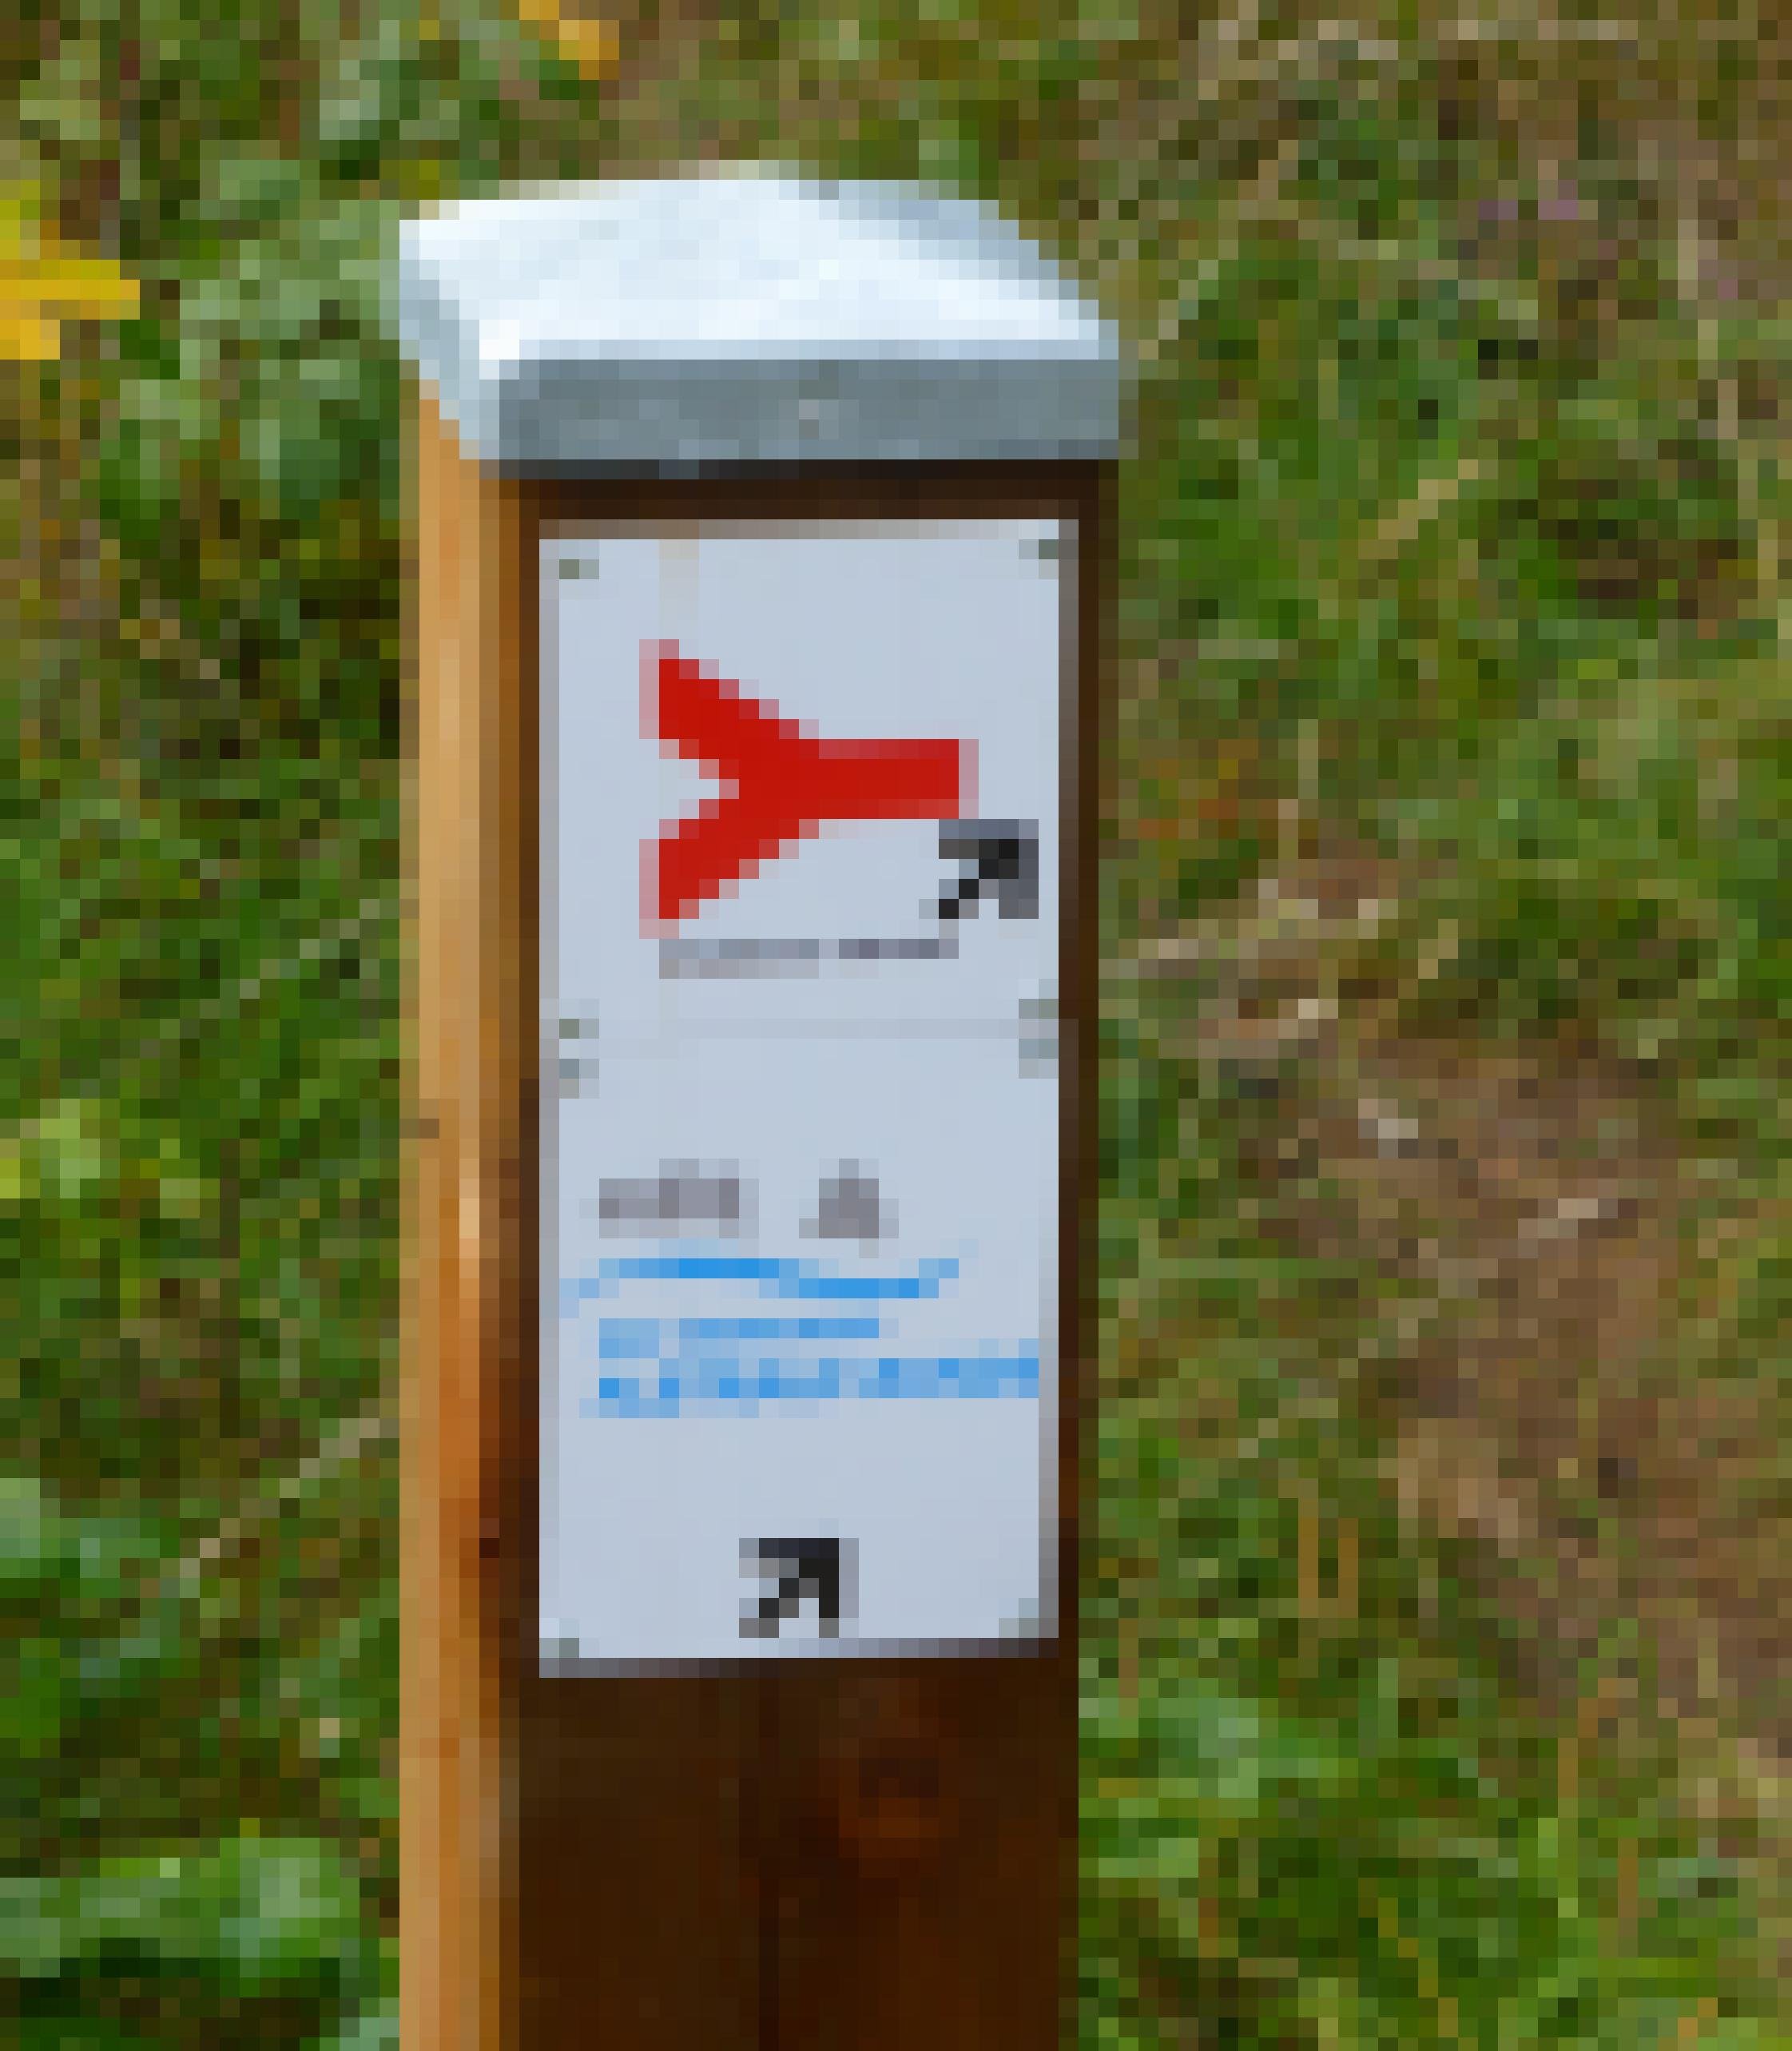 Blech-bemützter Holzpflock, dessen weißes Schild mit dem roten Ypsilon sowie der blauen Inschrift „Albtrauf-Runde“ versehen ist.